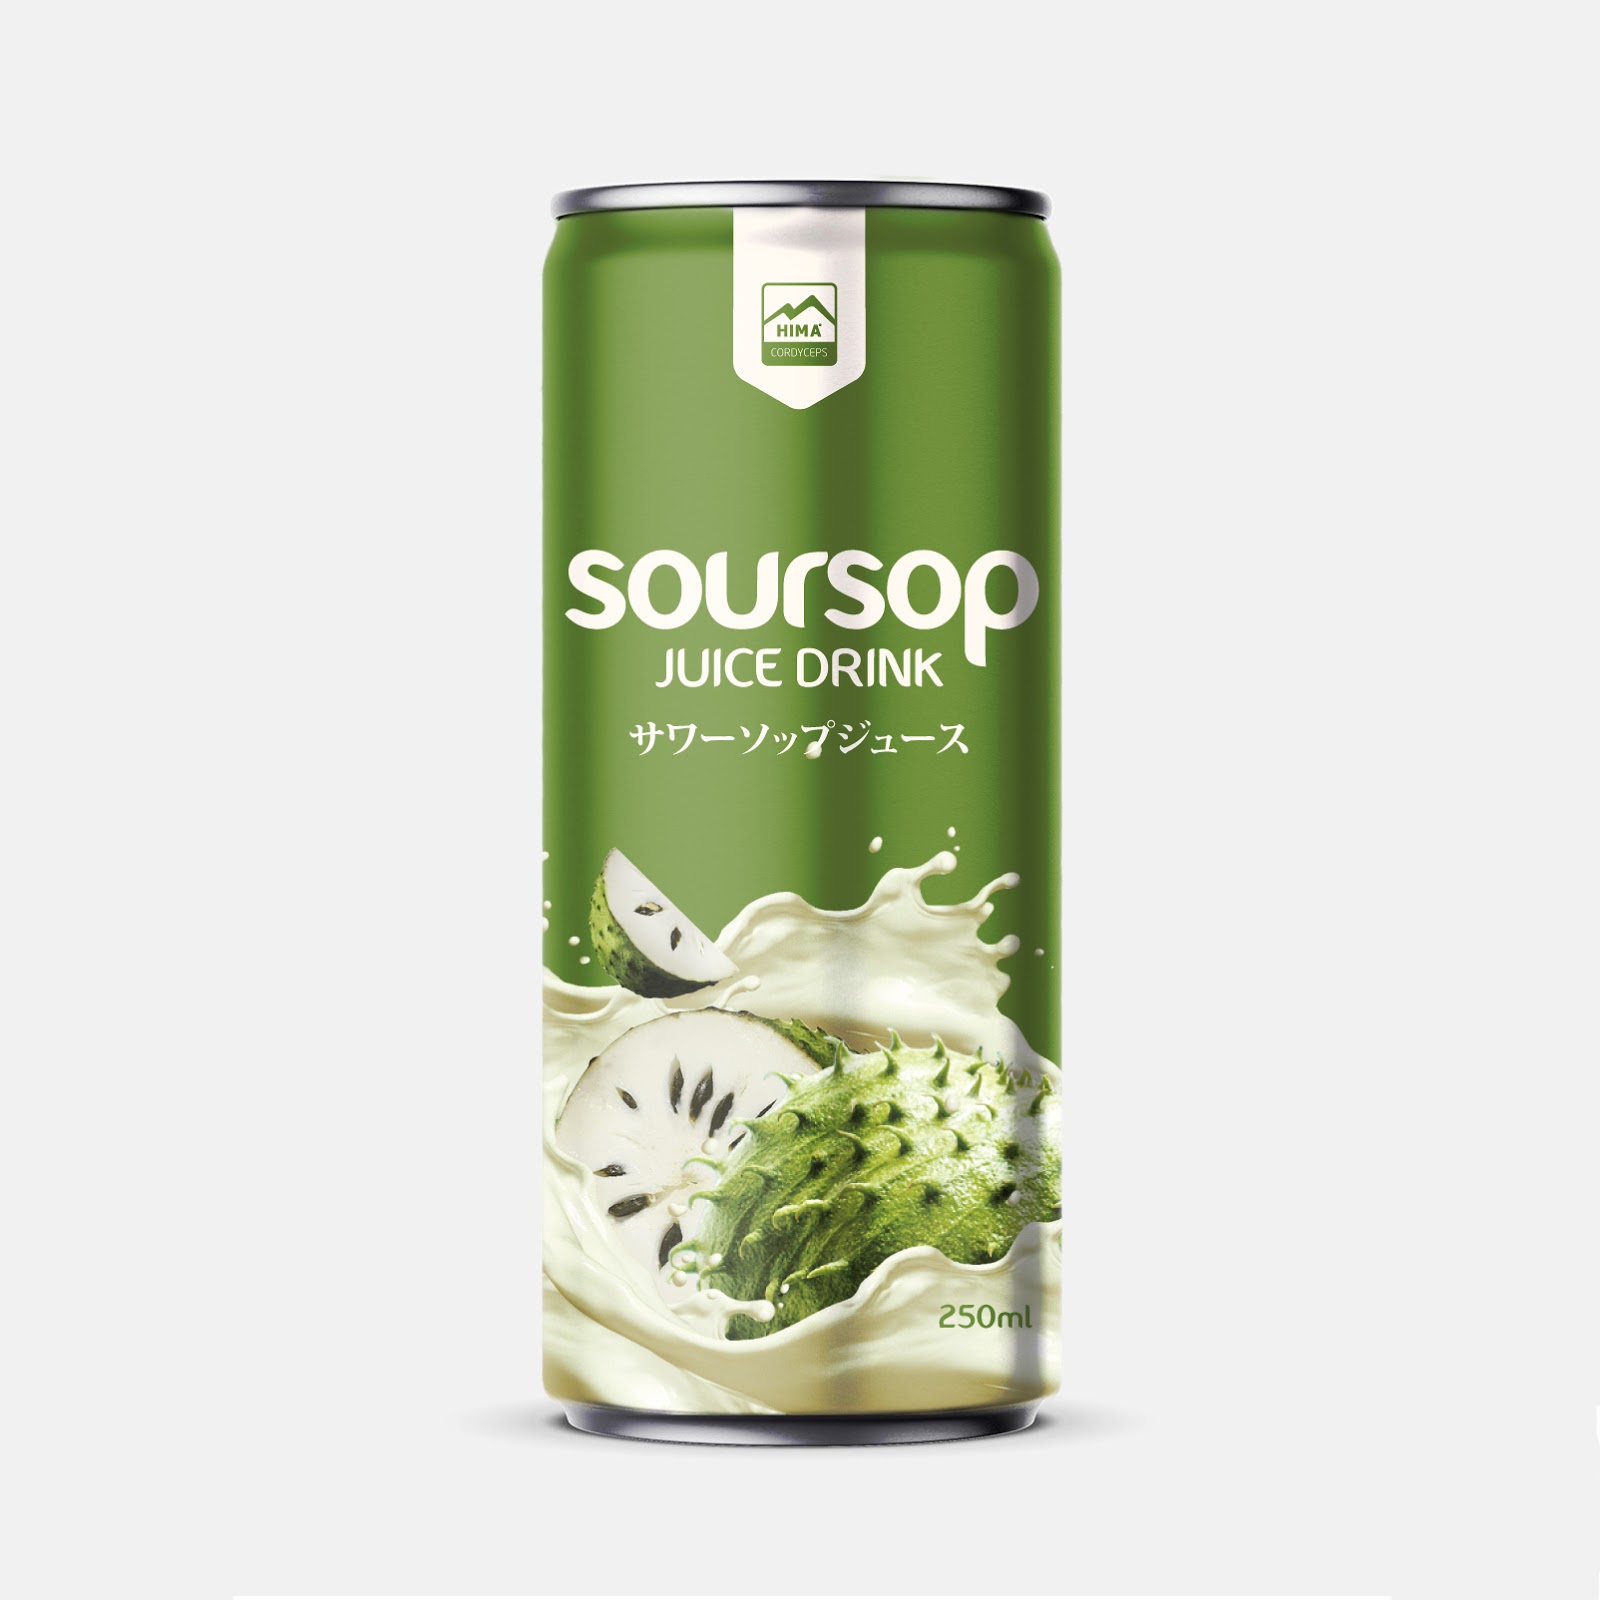 饮料日本酸枣汁西安四喜品牌策划包装设计VI设计logo设计